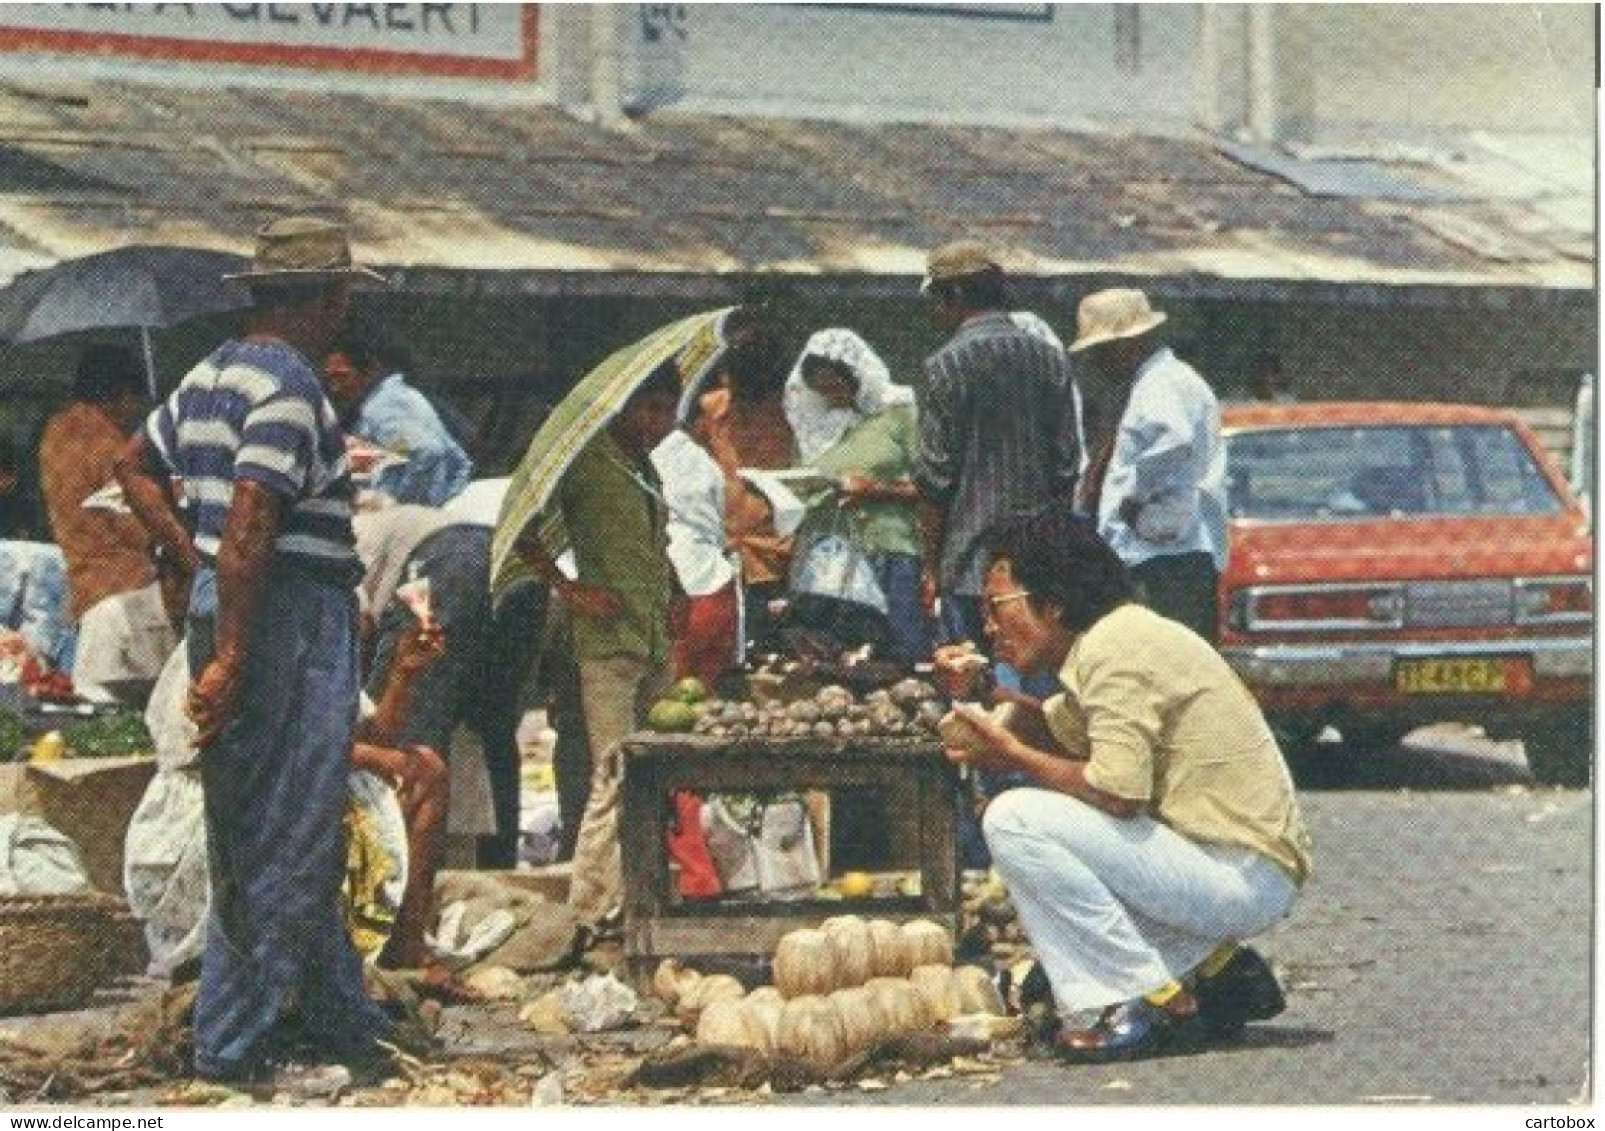 Suriname, Paramaribo, Centrale Markt  (Een Raster Op De Kaart Is Veroorzaakt Door Het Scannen; De Afbeelding Is Helder) - Surinam